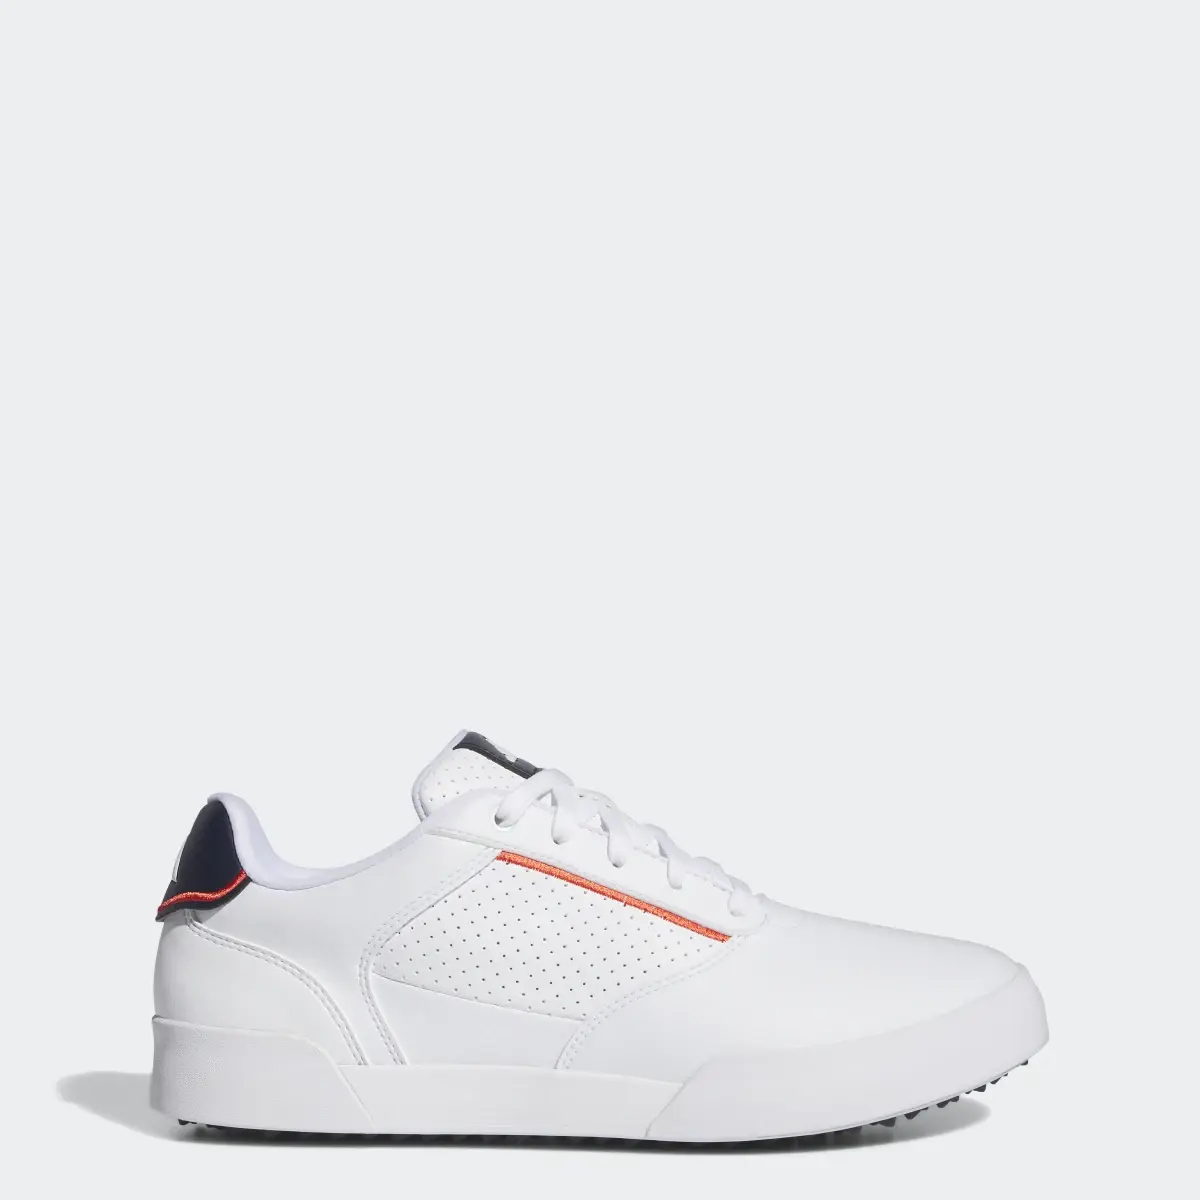 Adidas Retrocross Spikeless Golf Shoes. 1